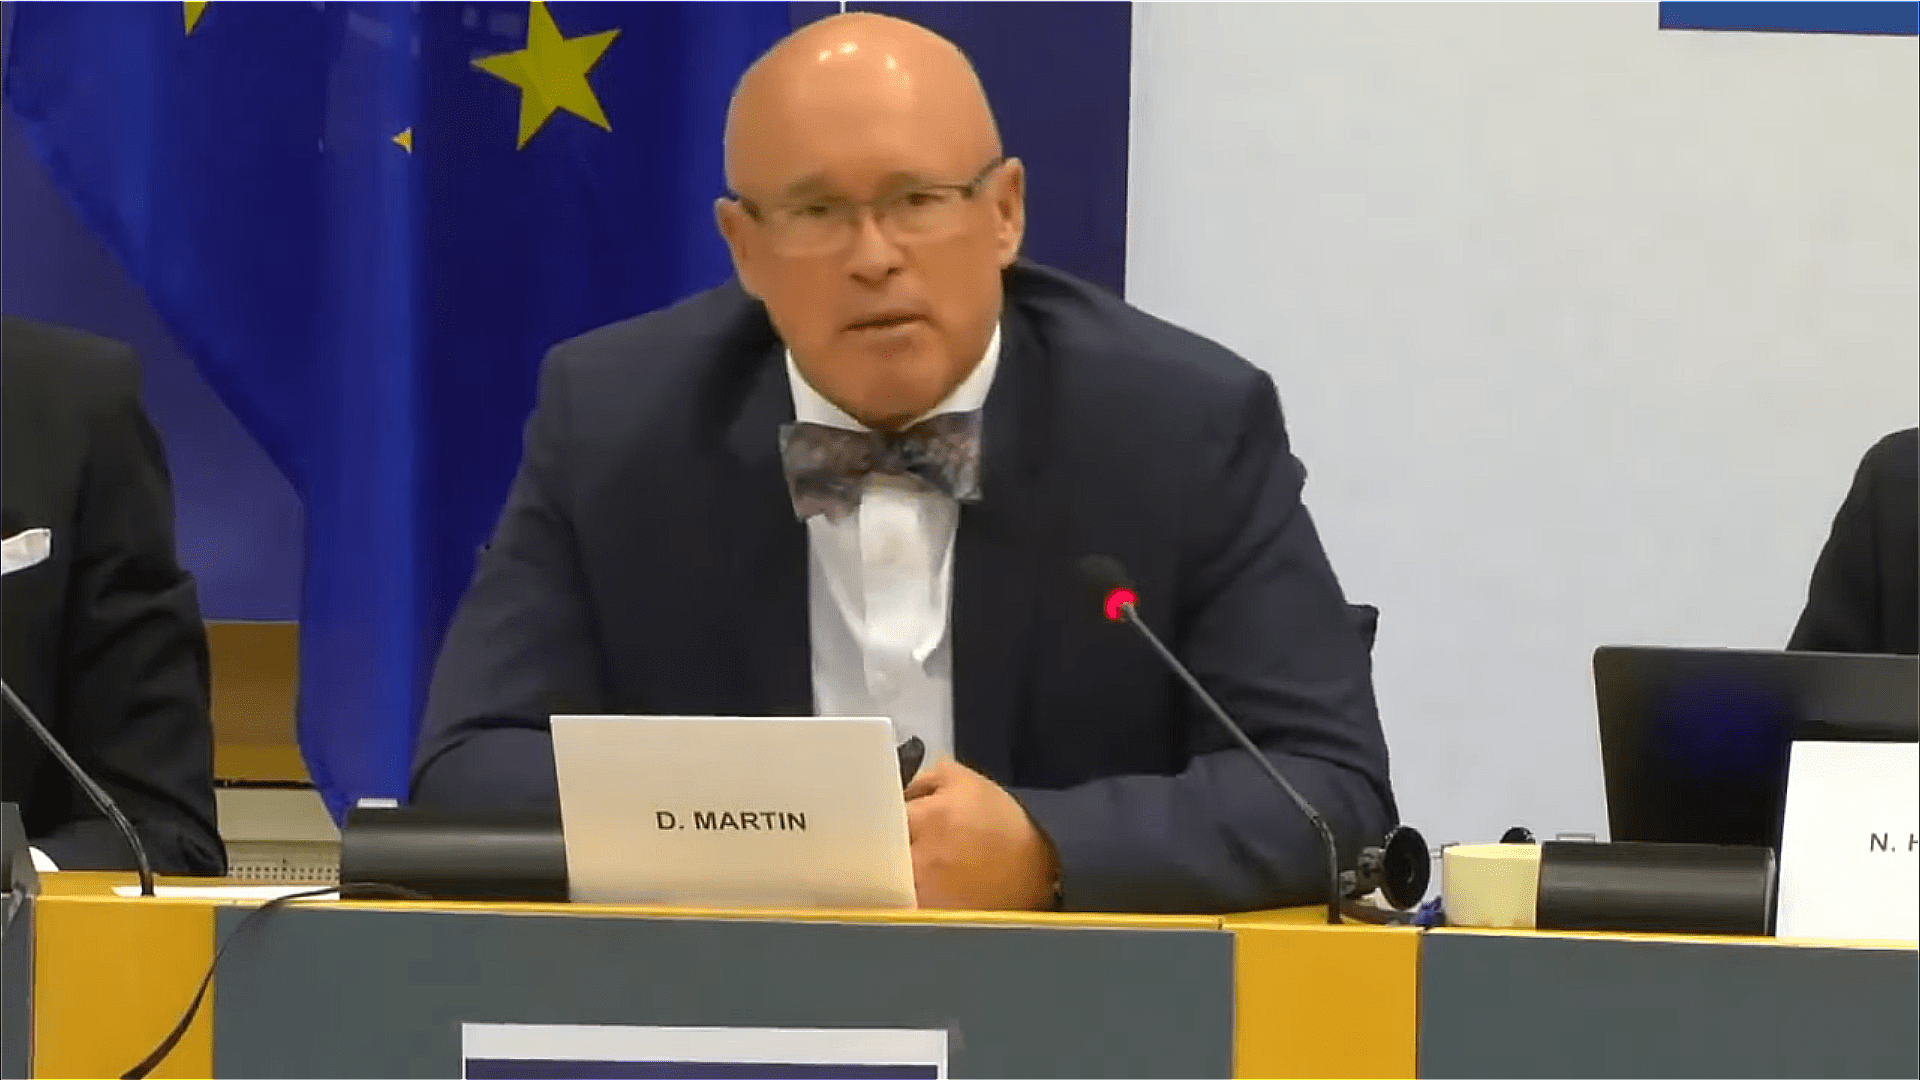 dr-david-martin-bei-hearing-im-eu-parlament-sars-cov-2-gezielt-freigesetzt-um-impfung-zu-verkaufen